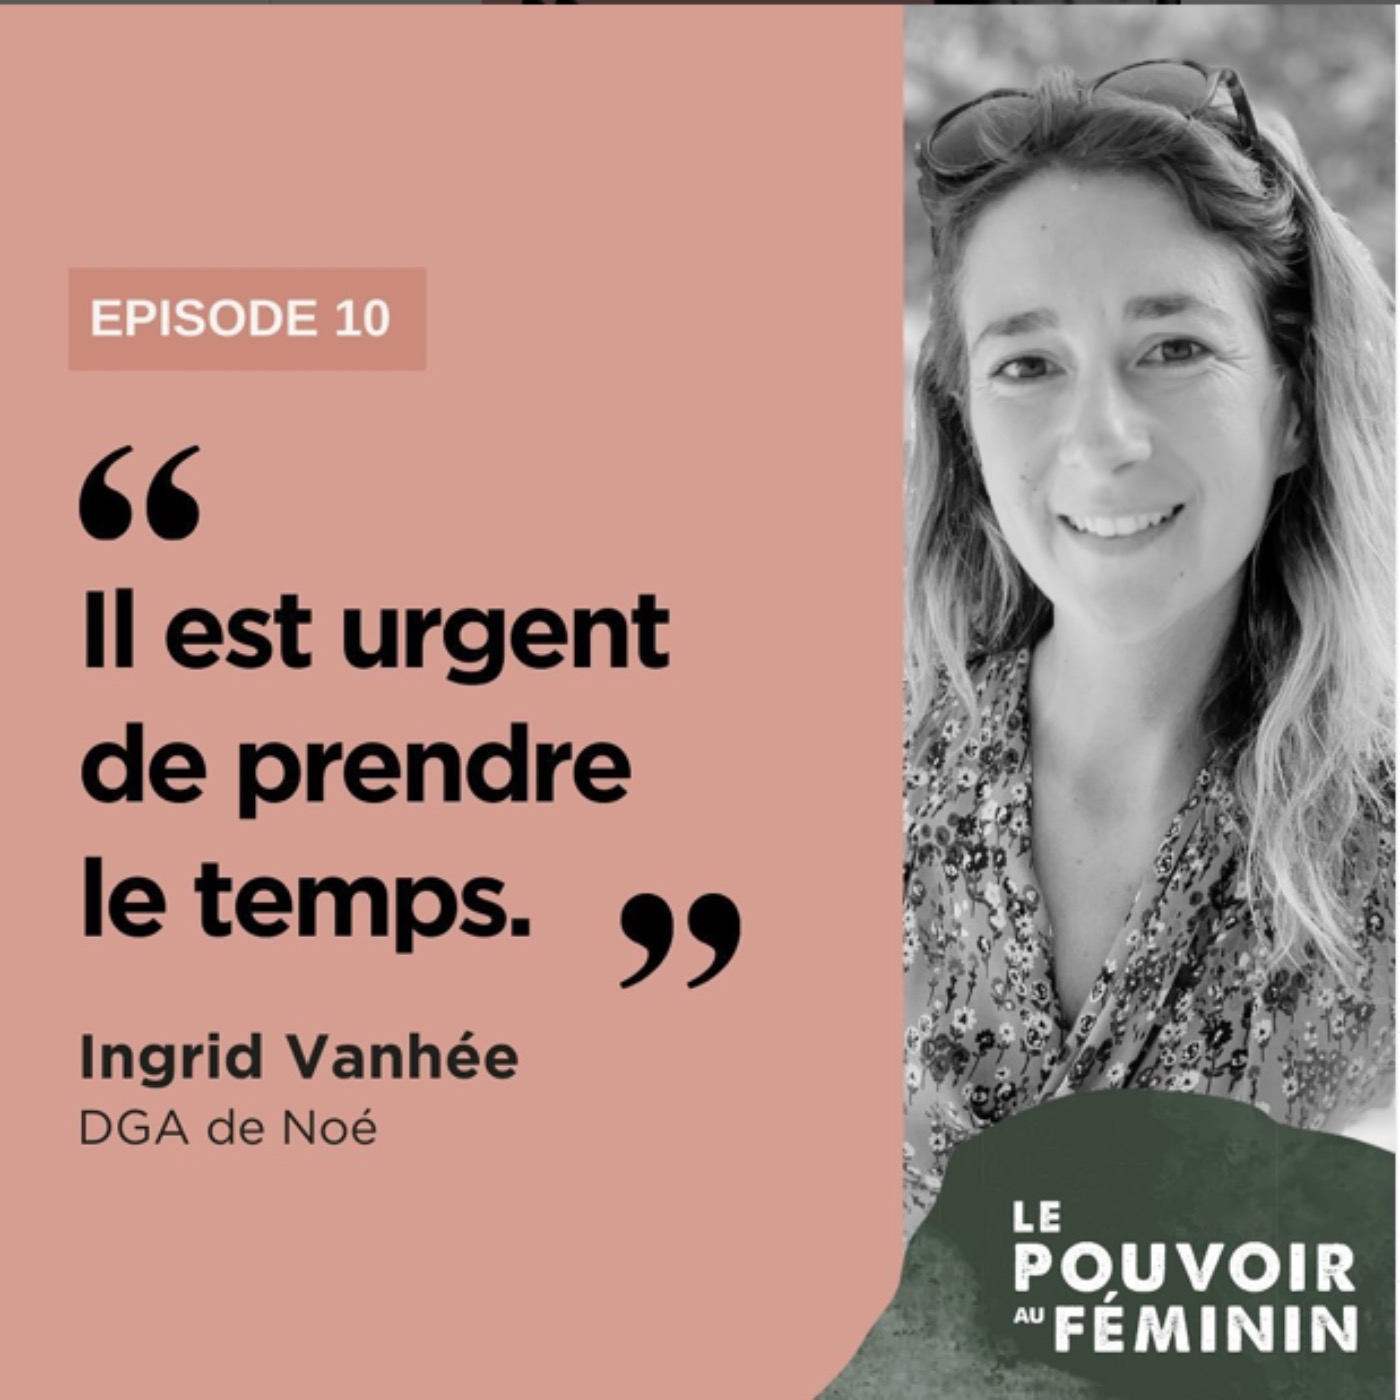 Ingrid Vanhée, DGA de Noé (2) - "Il est urgent de prendre le temps"